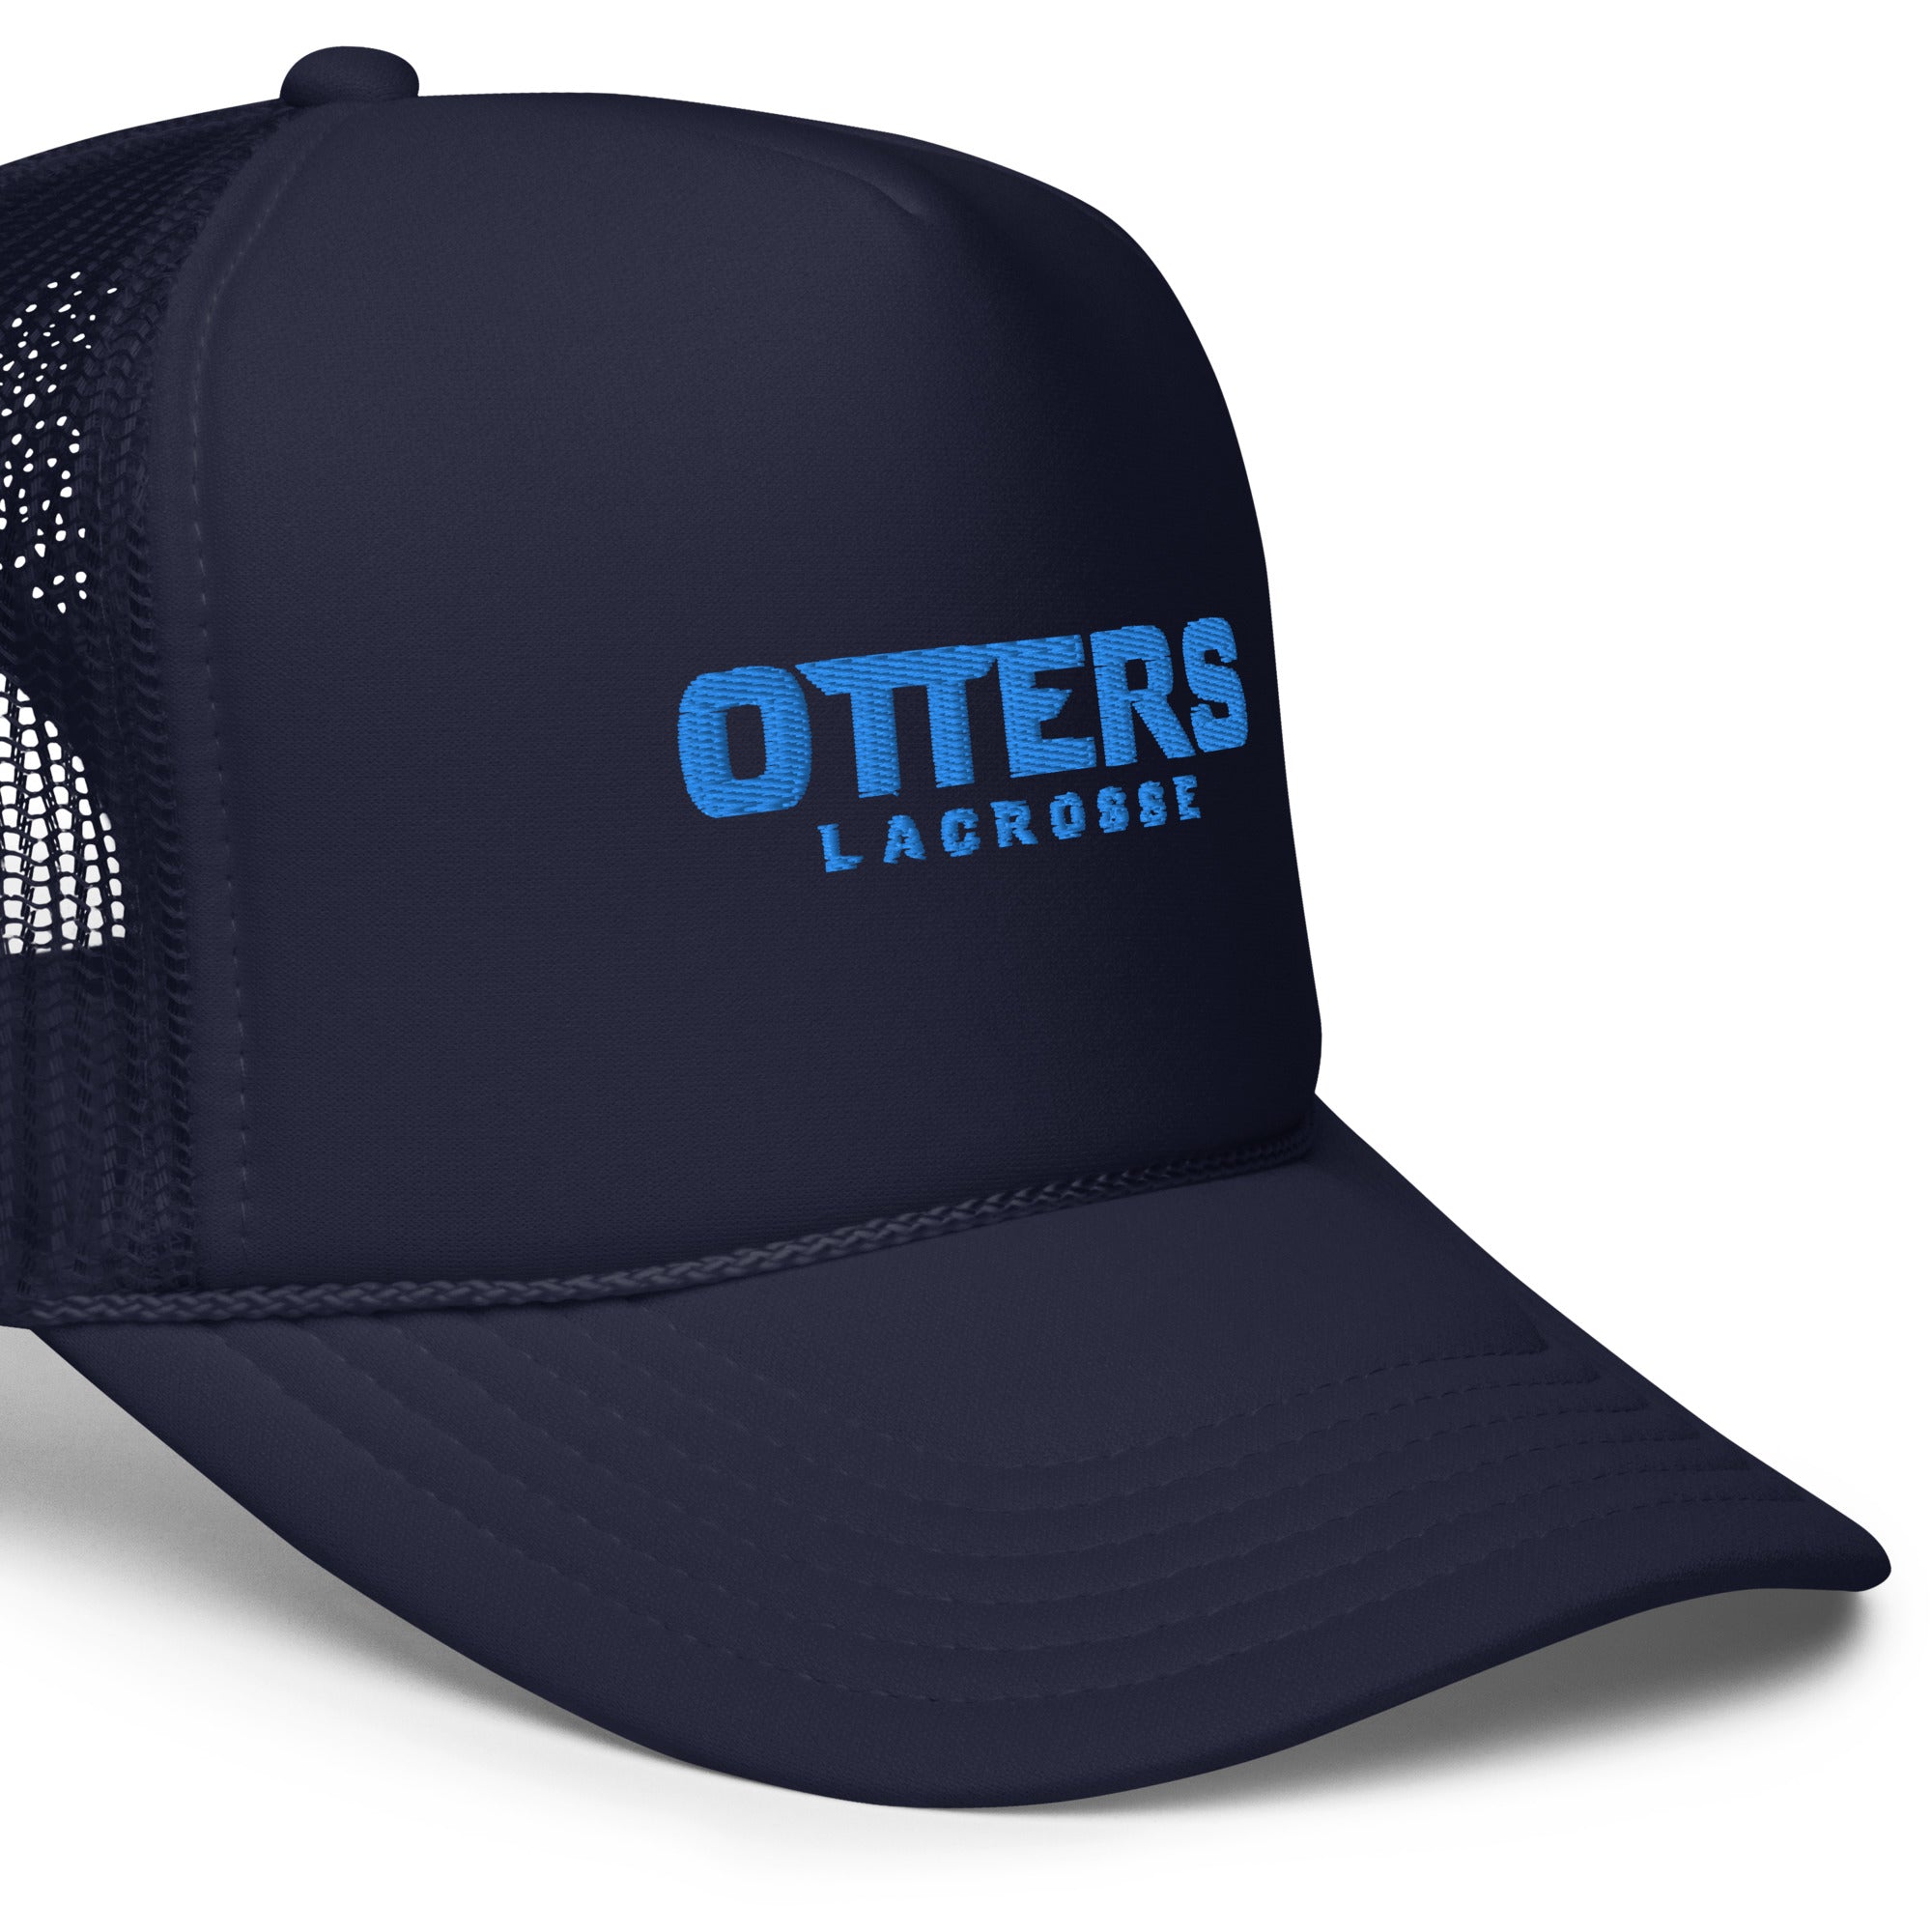 Otters Foam trucker hat